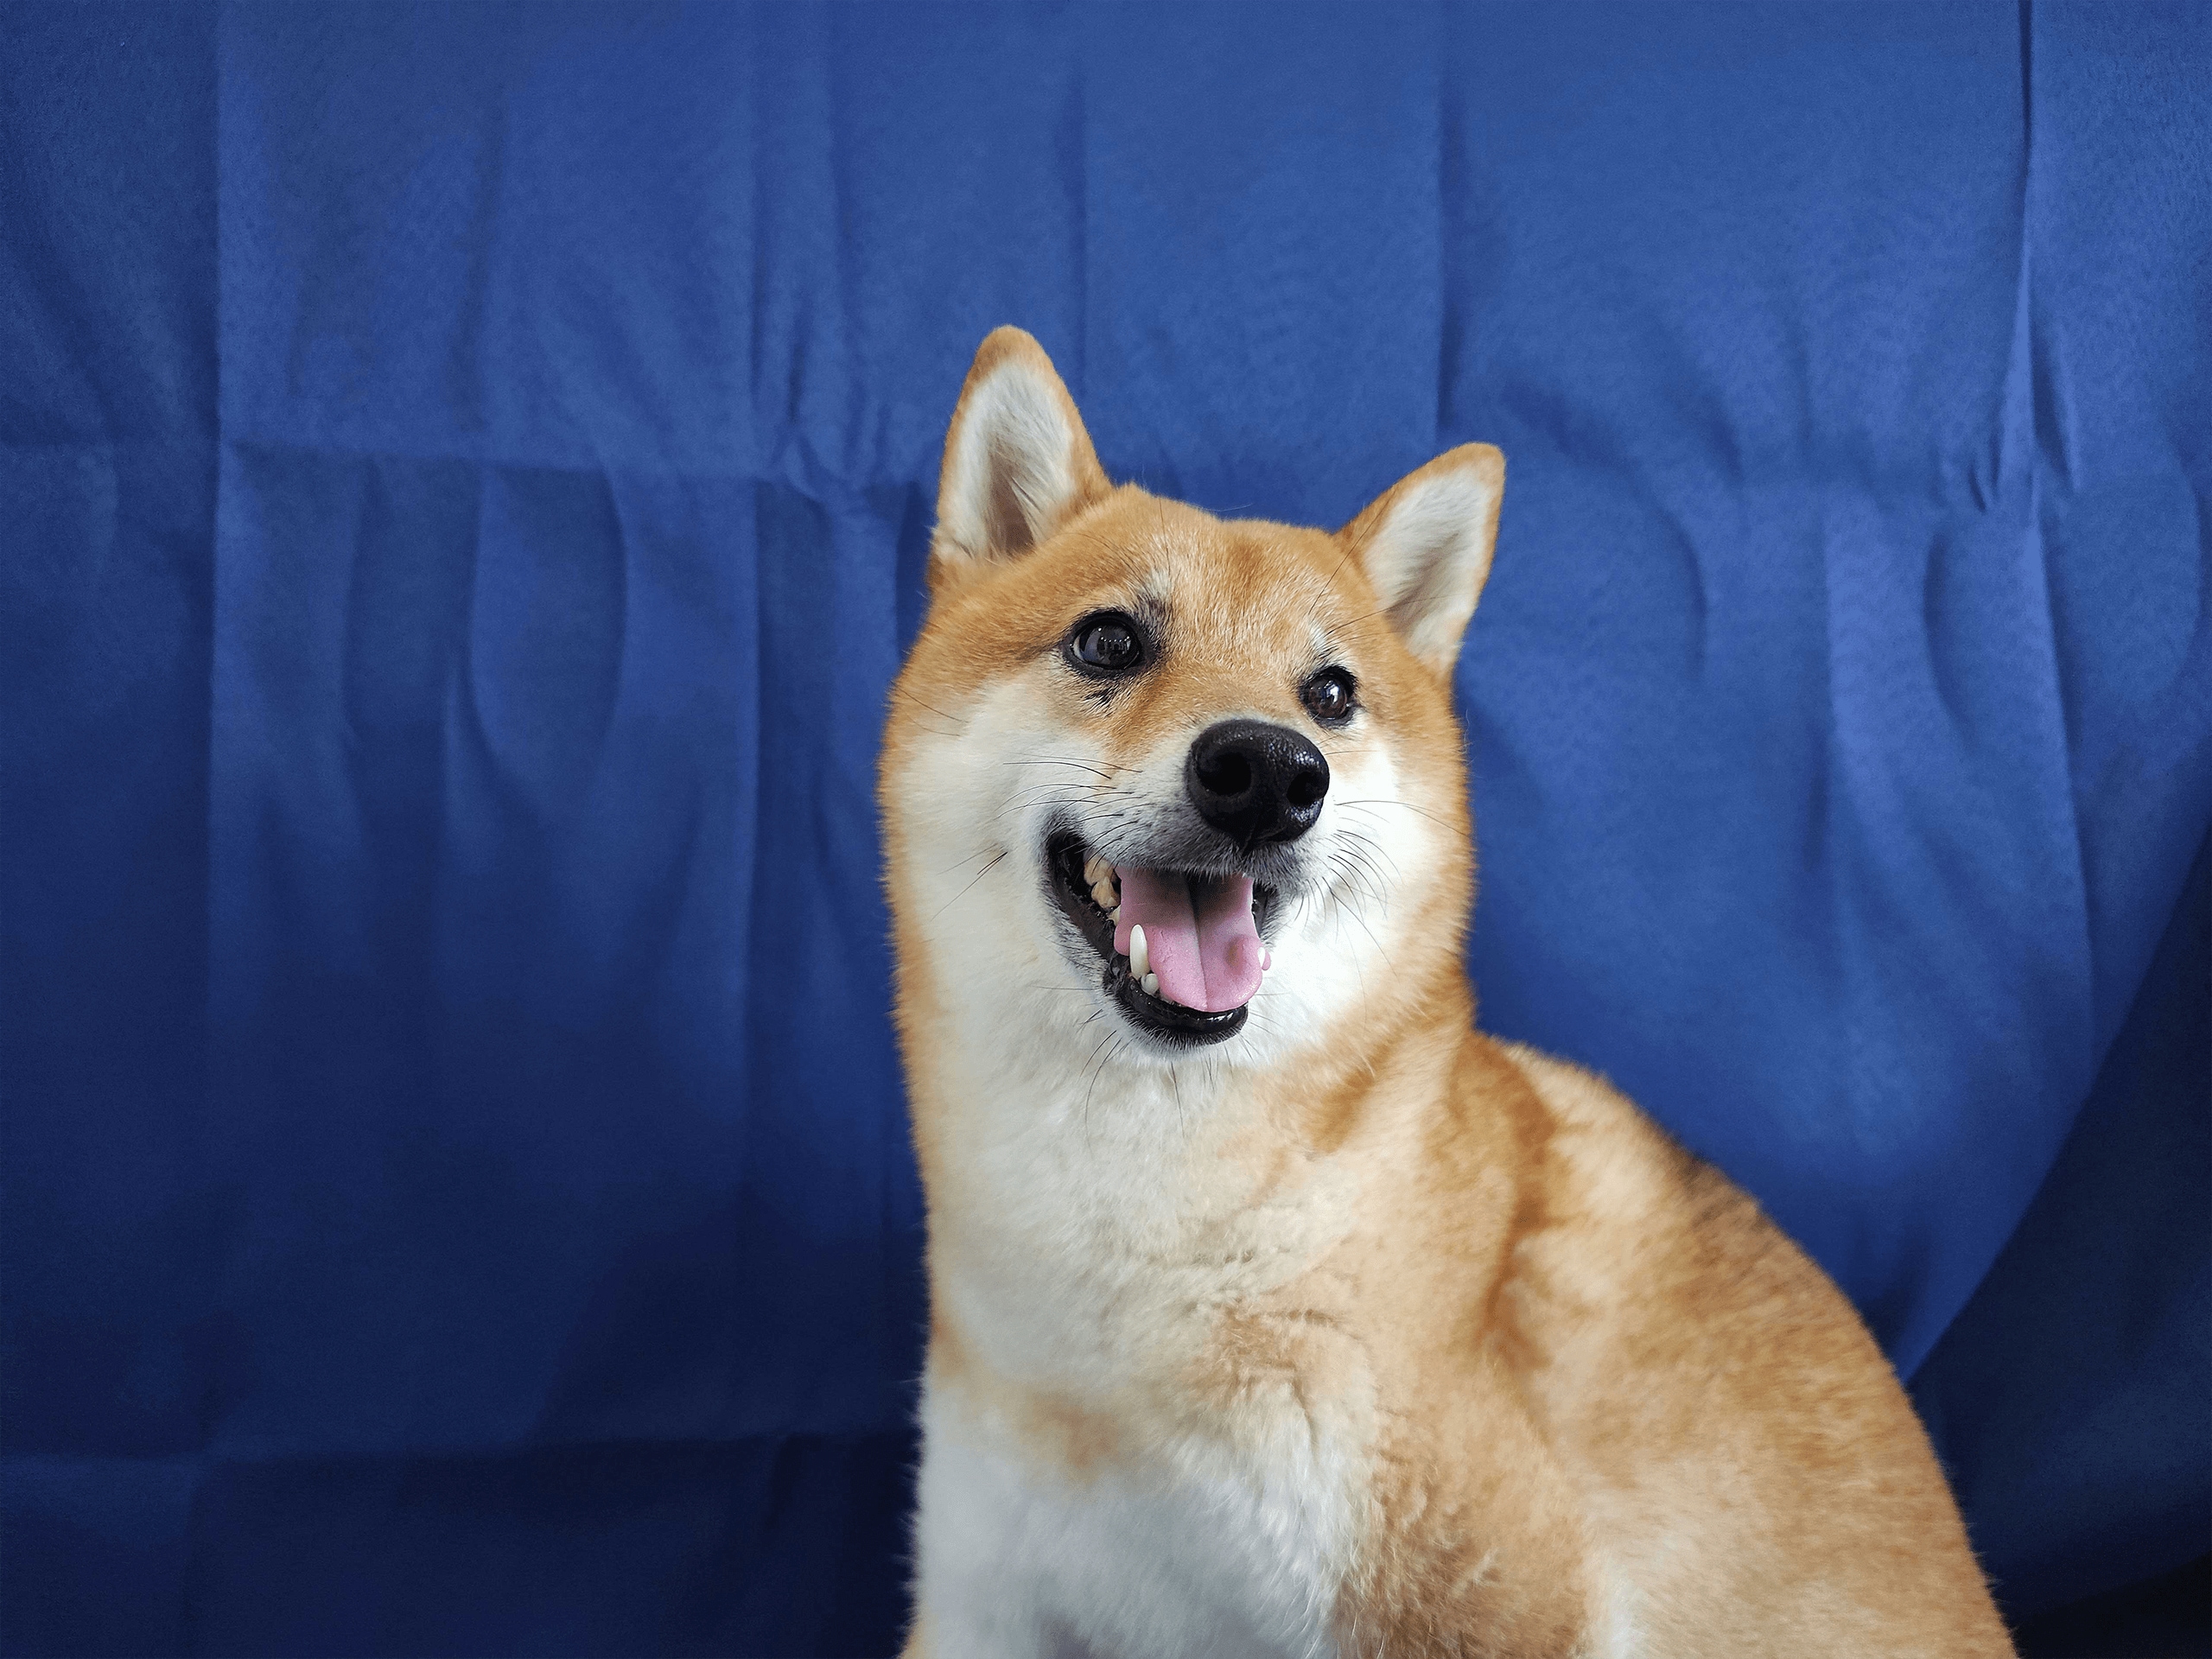 这是参与三星ISOCELL照片展的ISOCELL 2亿像素表现的蓝色背景的棕色小狗照片。